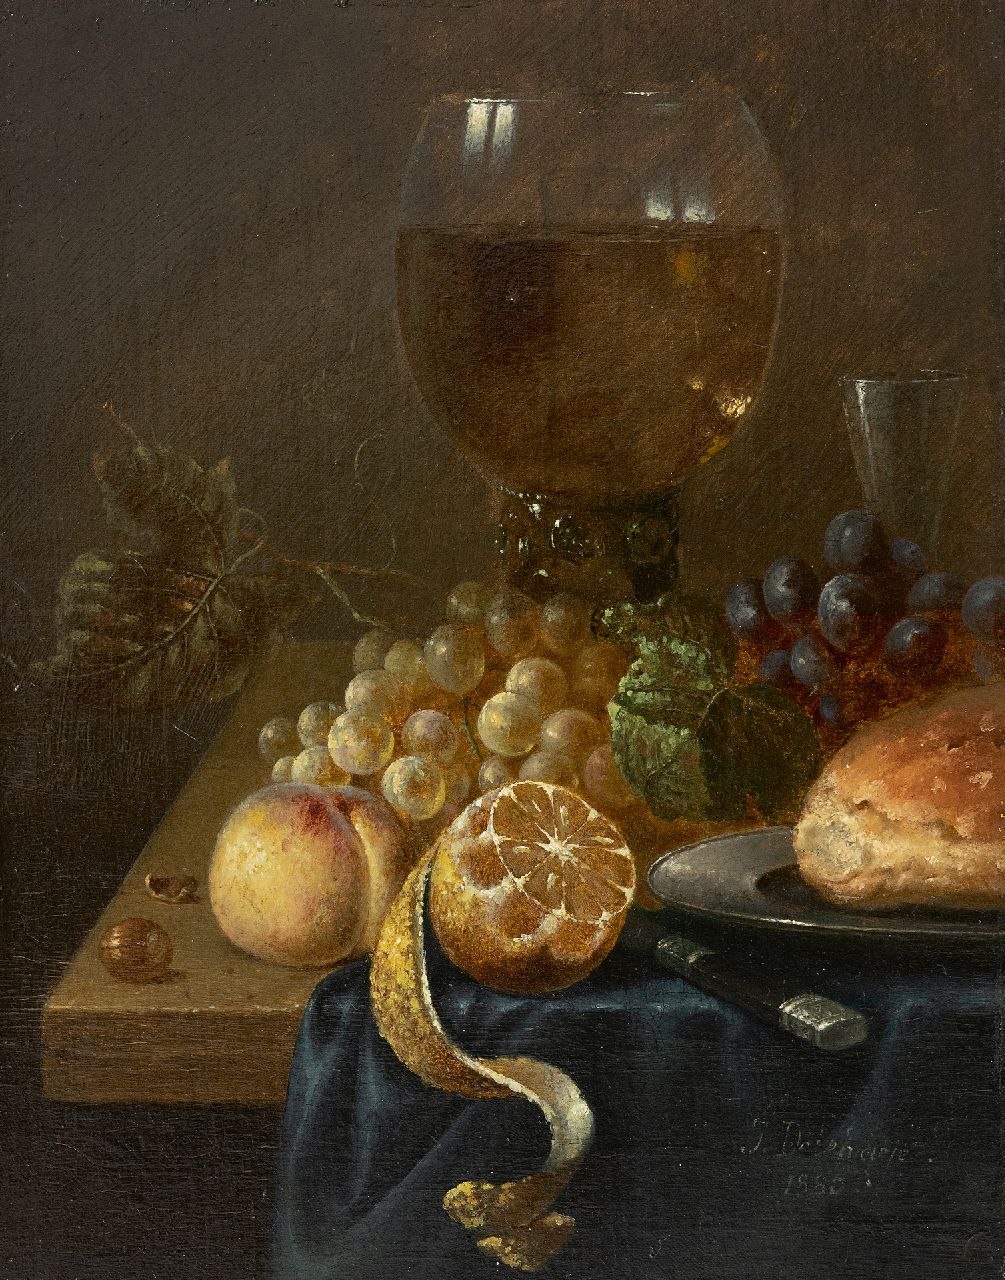 Jos Delehaye | Stilleven met roemer, druiven, citroen en tinnen schotel, olieverf op doek, 26,9 x 21,2 cm, gesigneerd r.o. en gedateerd 1880